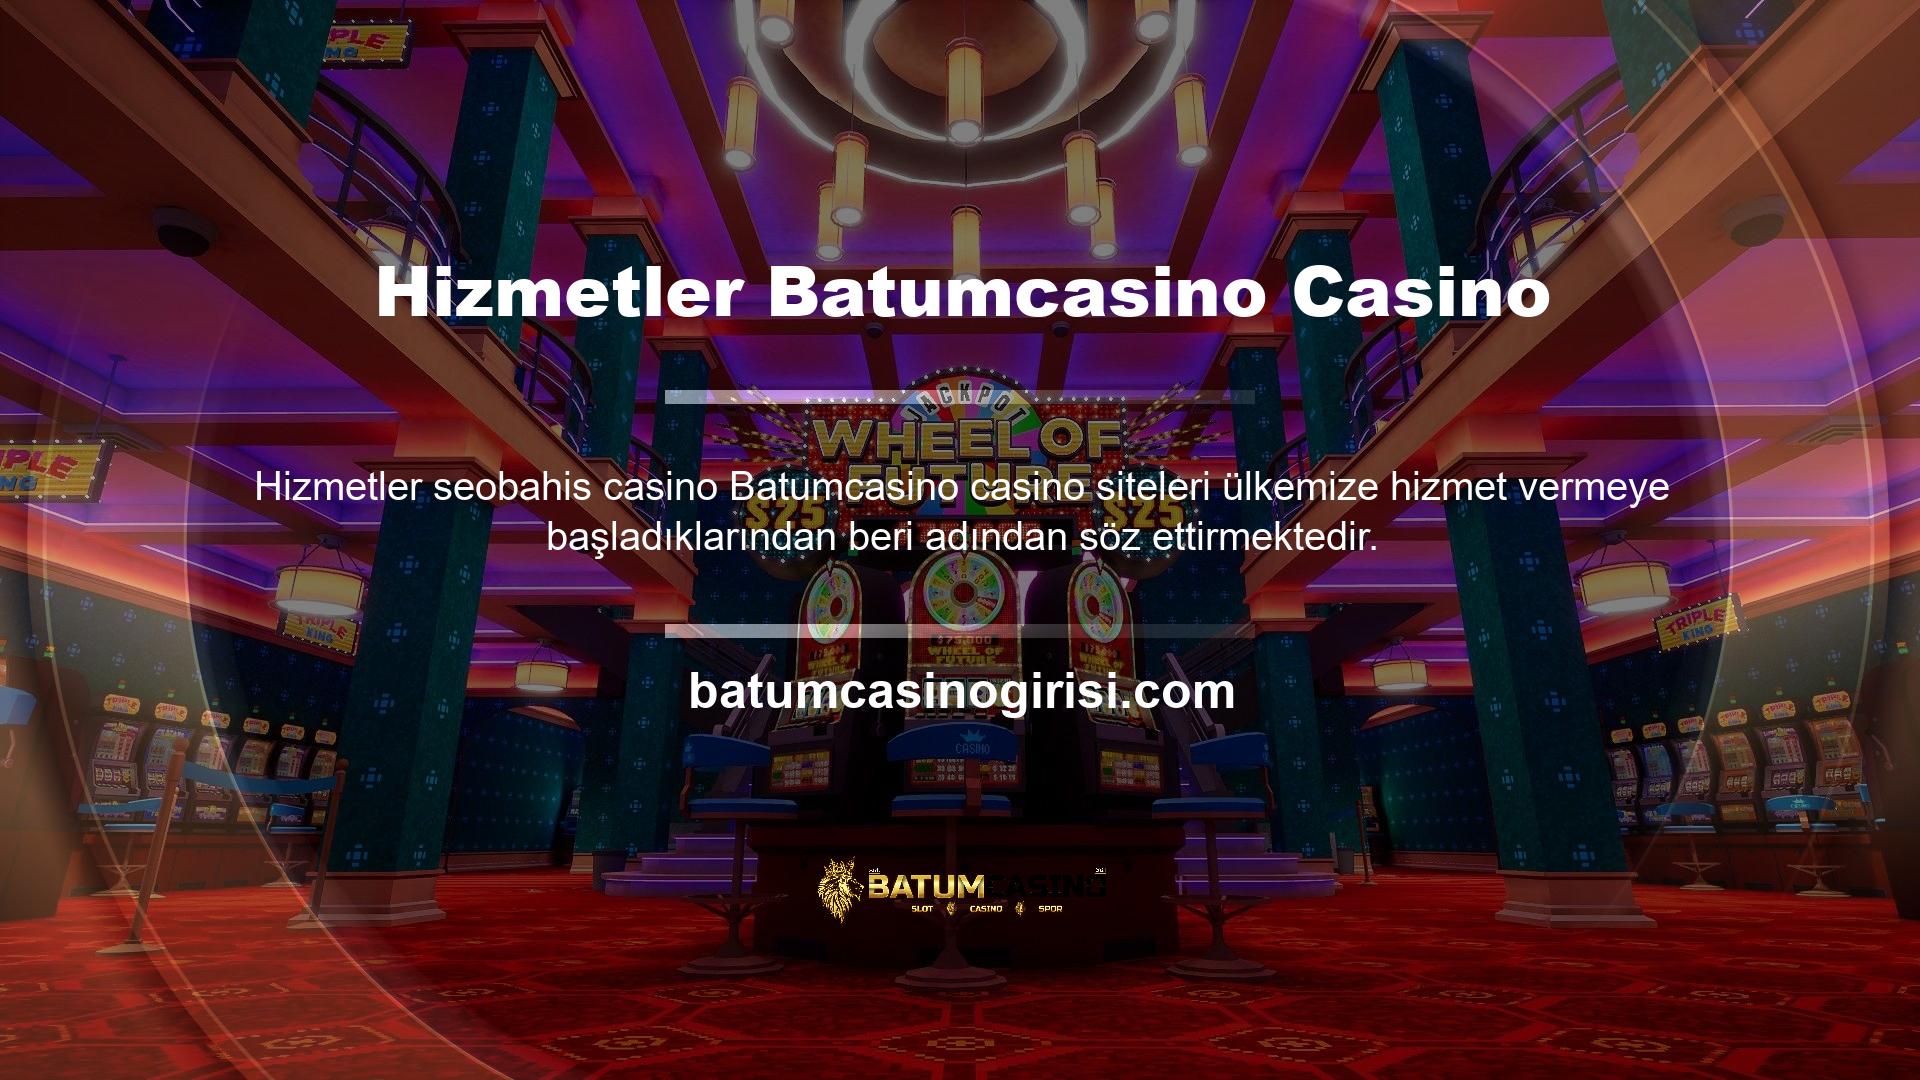 Dünyanın her yerindeki casino siteleri Batumcasino hizmetlerinin kalitesini sürekli olarak geliştirmektedir